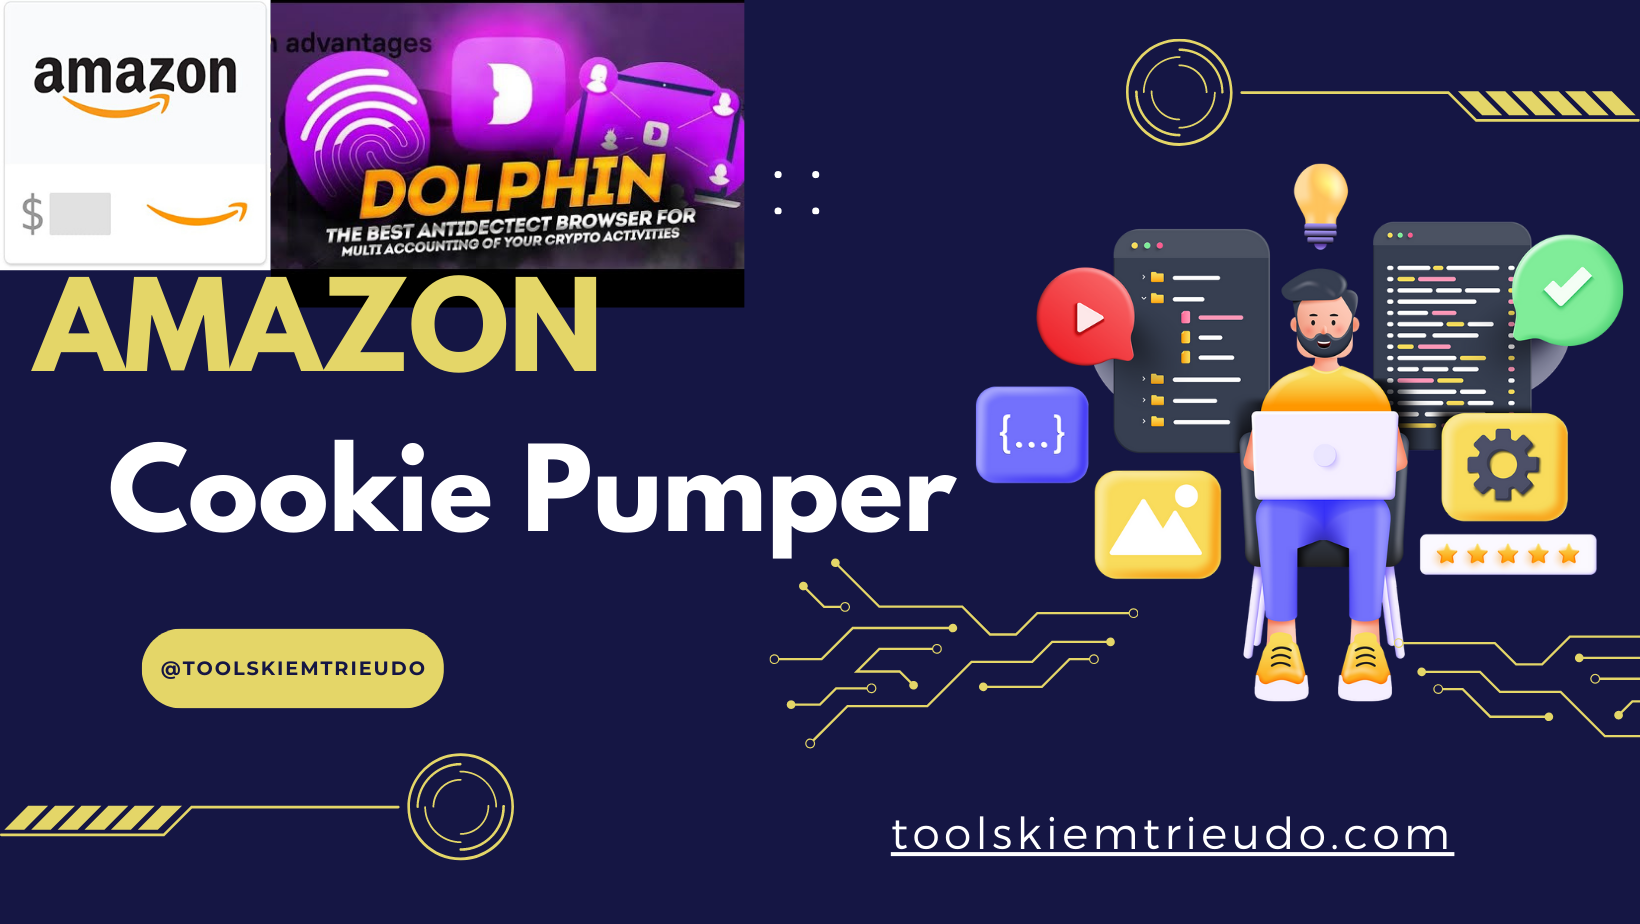 Amazon cookie Pumper on Dolphin Automation like a human- Công cụ nuôi tài khoản amazon trên Dolphin như người dùng thật